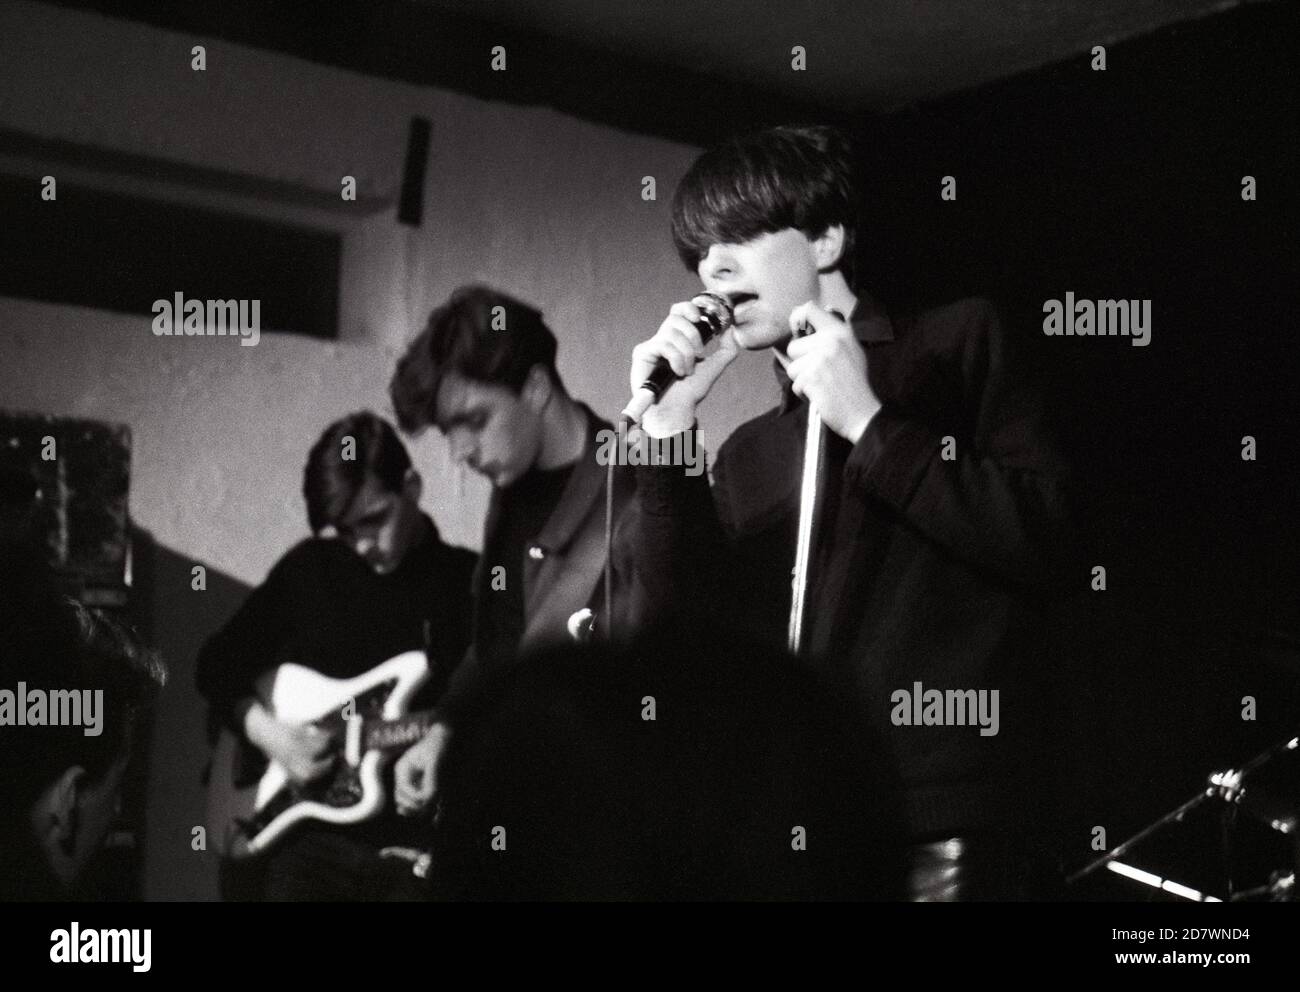 Bobby Gillespie, Robert Young y Paul Harte de Primal Scream actuando en el wellhead Inn, Wendover, Inglaterra, 20 de septiembre de 1986. Foto de stock